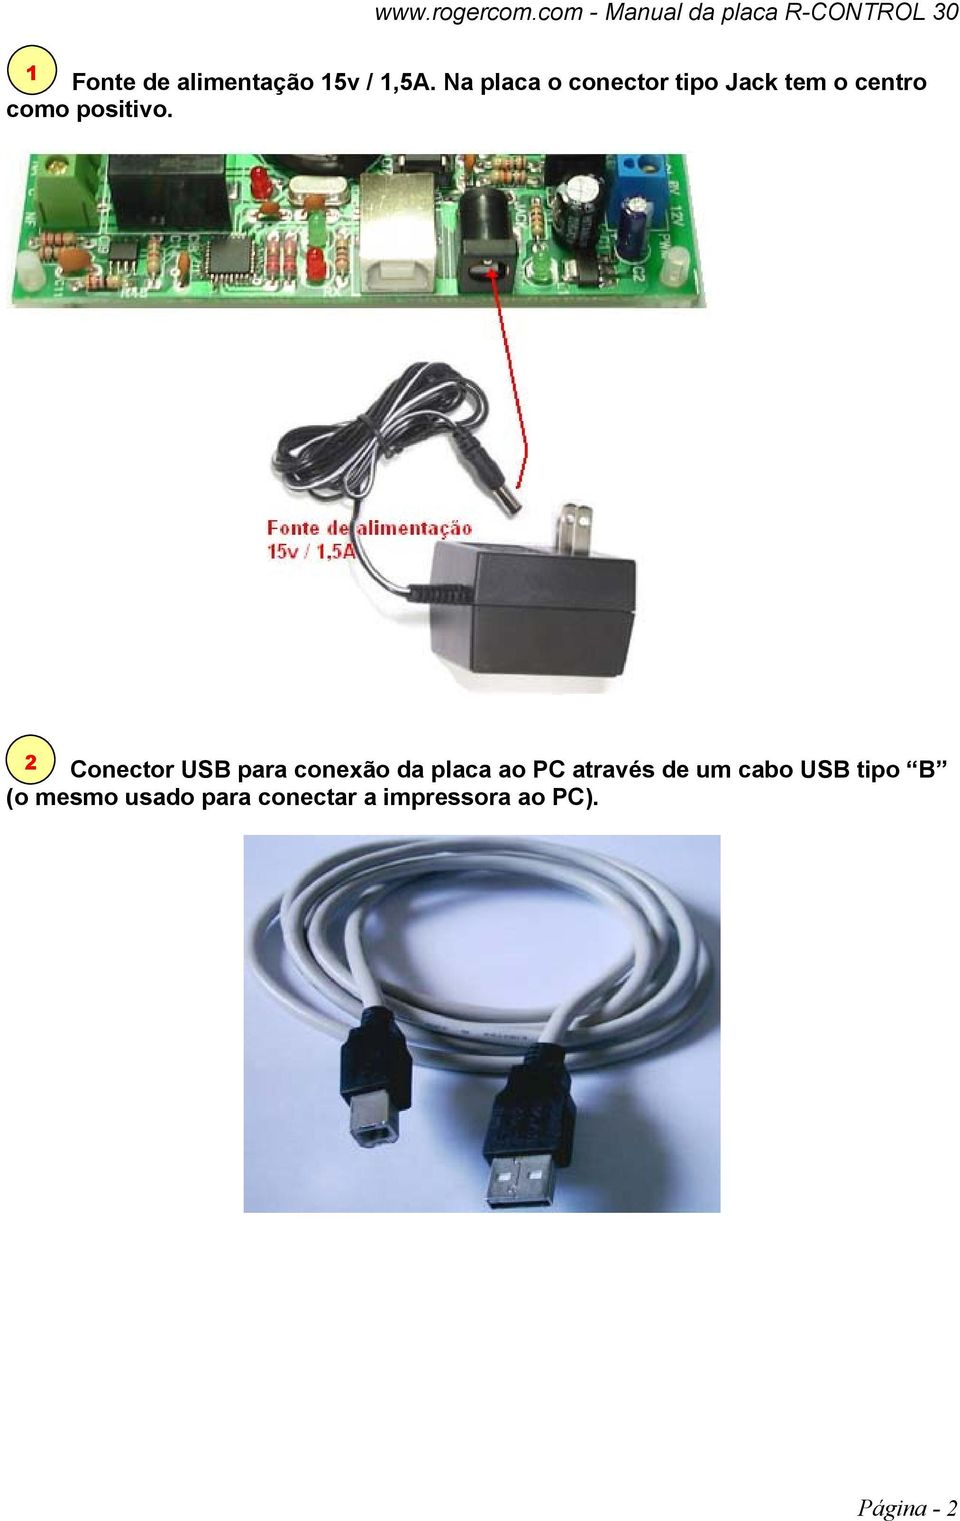 2 Conector USB para conexão da placa ao PC através de um